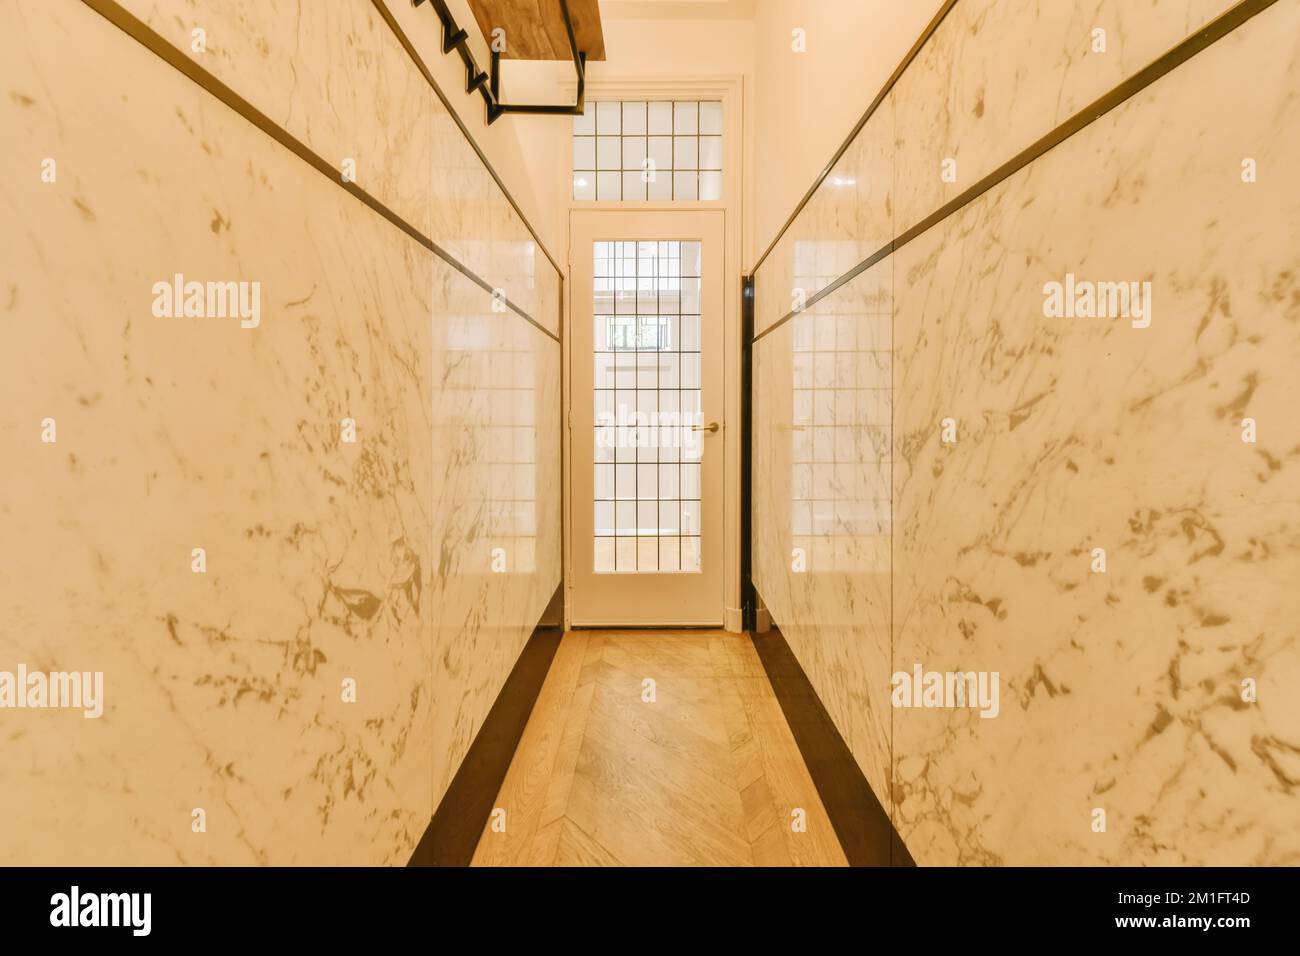 un long couloir avec du marbre blanc sur les murs et des boiseries autour du mur pour lui donner l'apparence d'un art déco Banque D'Images